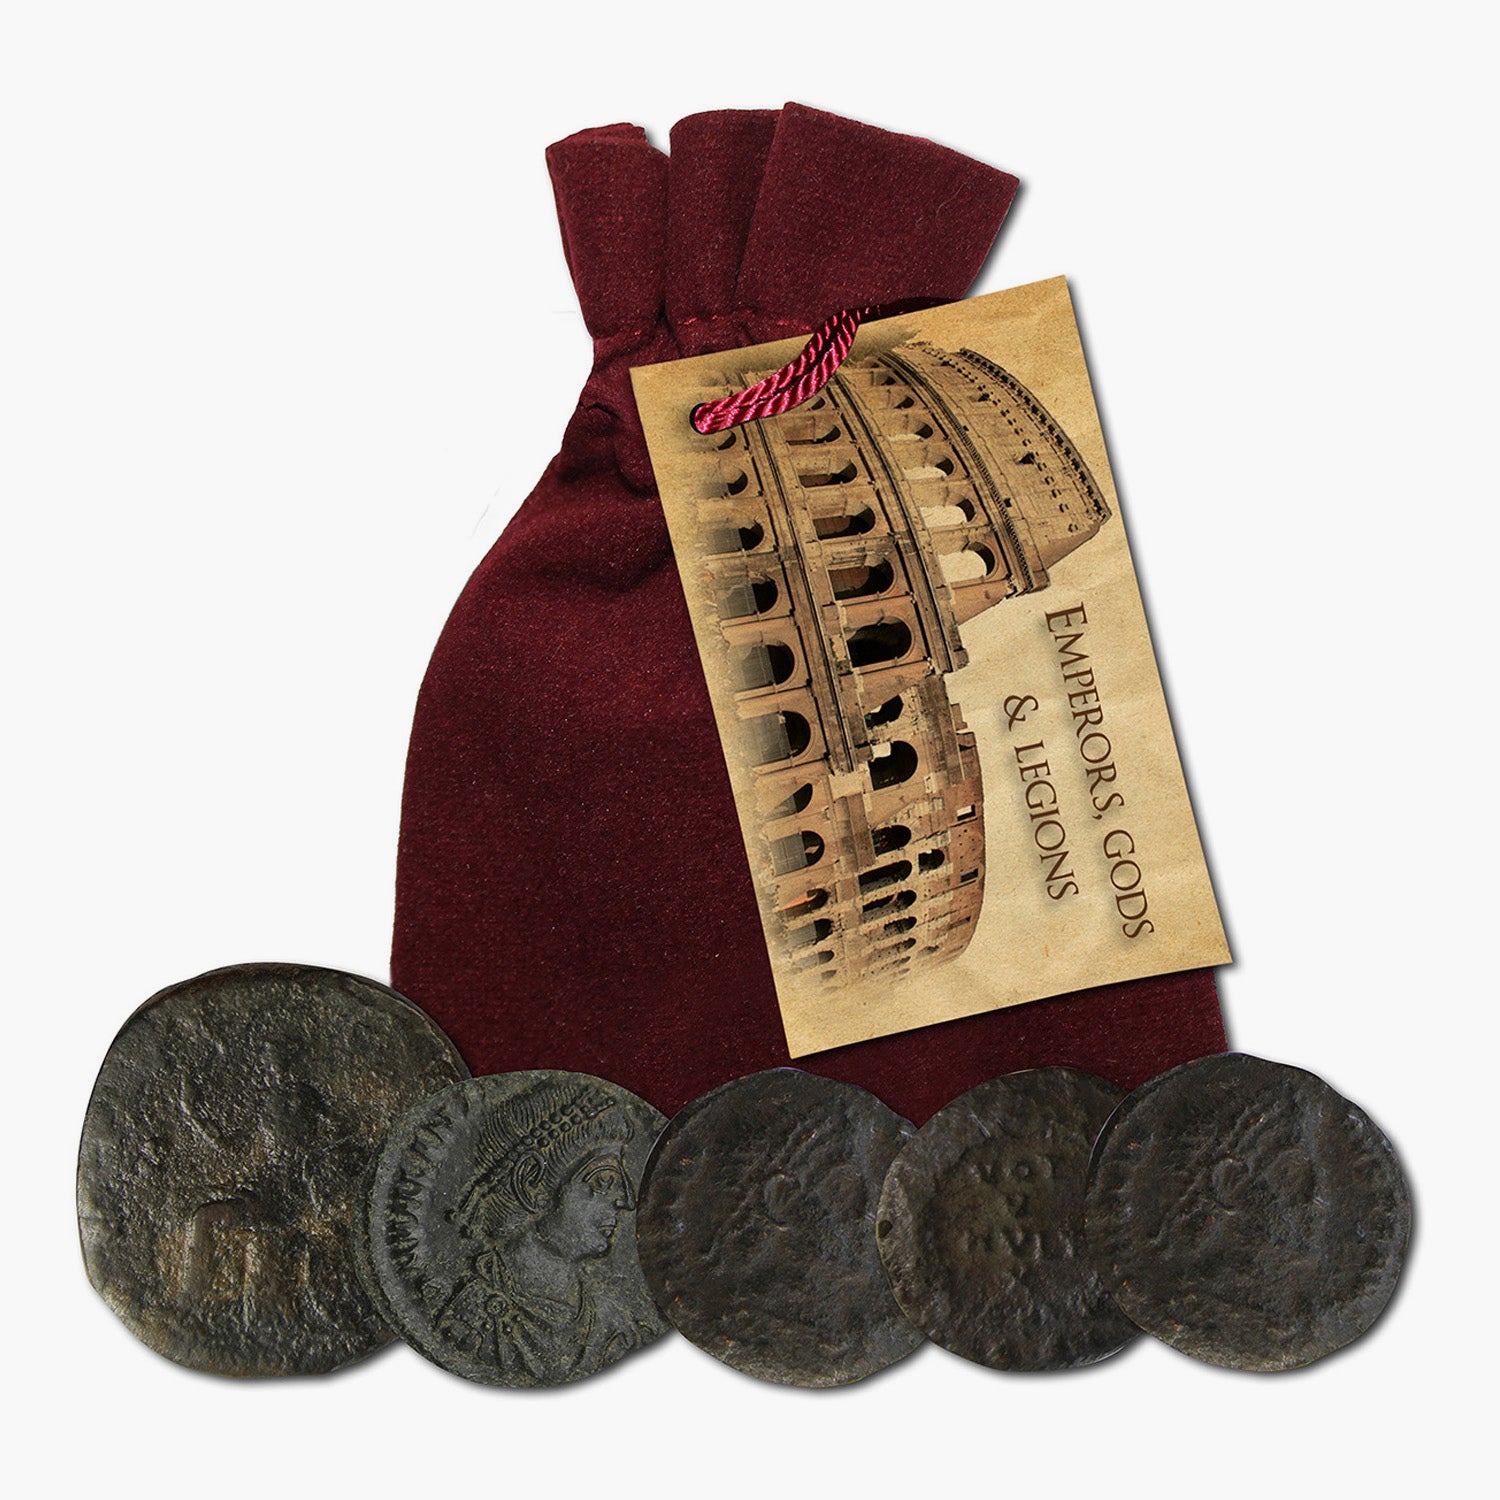 Empereurs, dieux et légions - Cinq pièces de monnaie anciennes dans un sac en velours